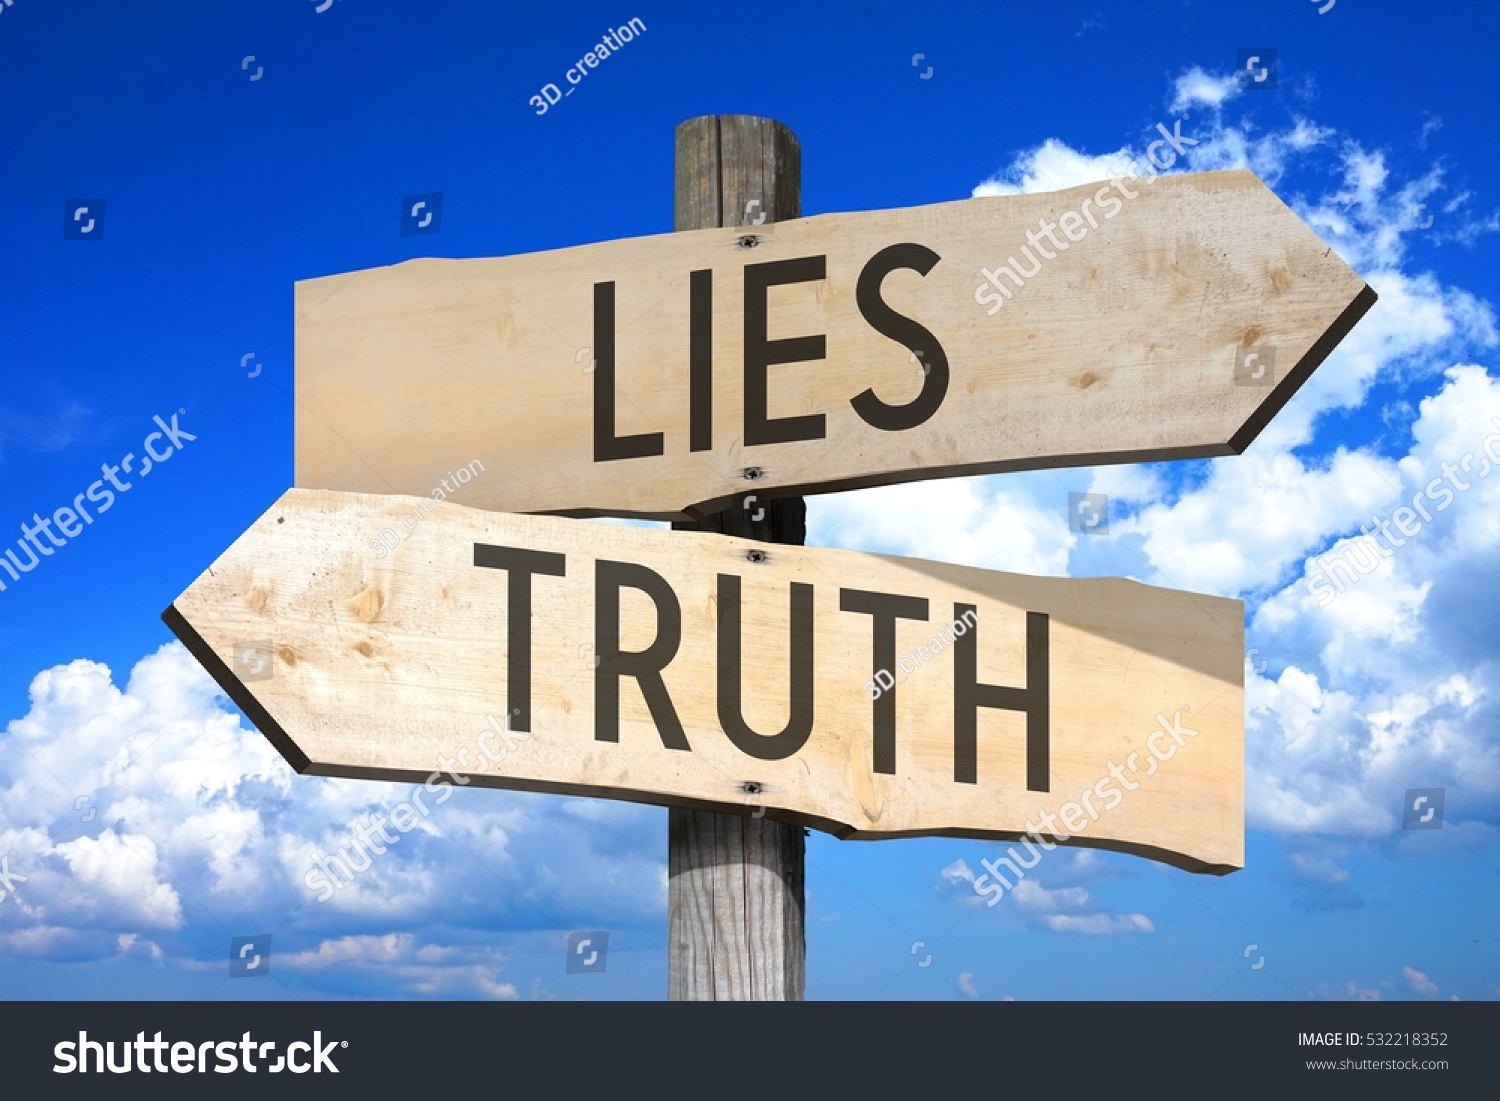 Lies, truth - wooden signpost #532218352